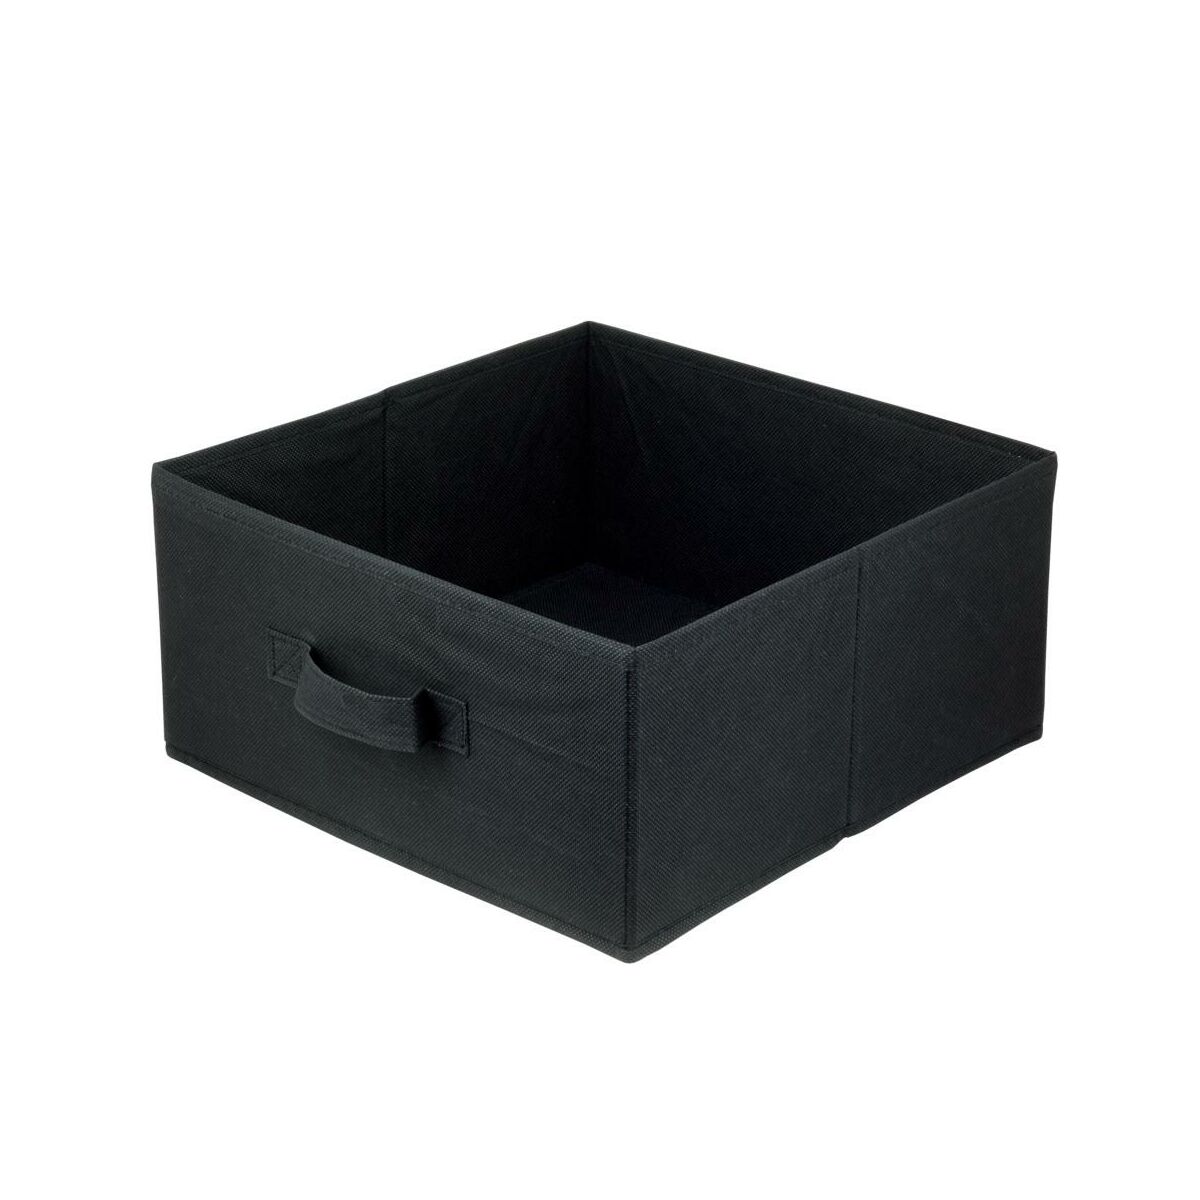 Pudełko tekstylne Kub 31 x 31 x 15 cm czarne